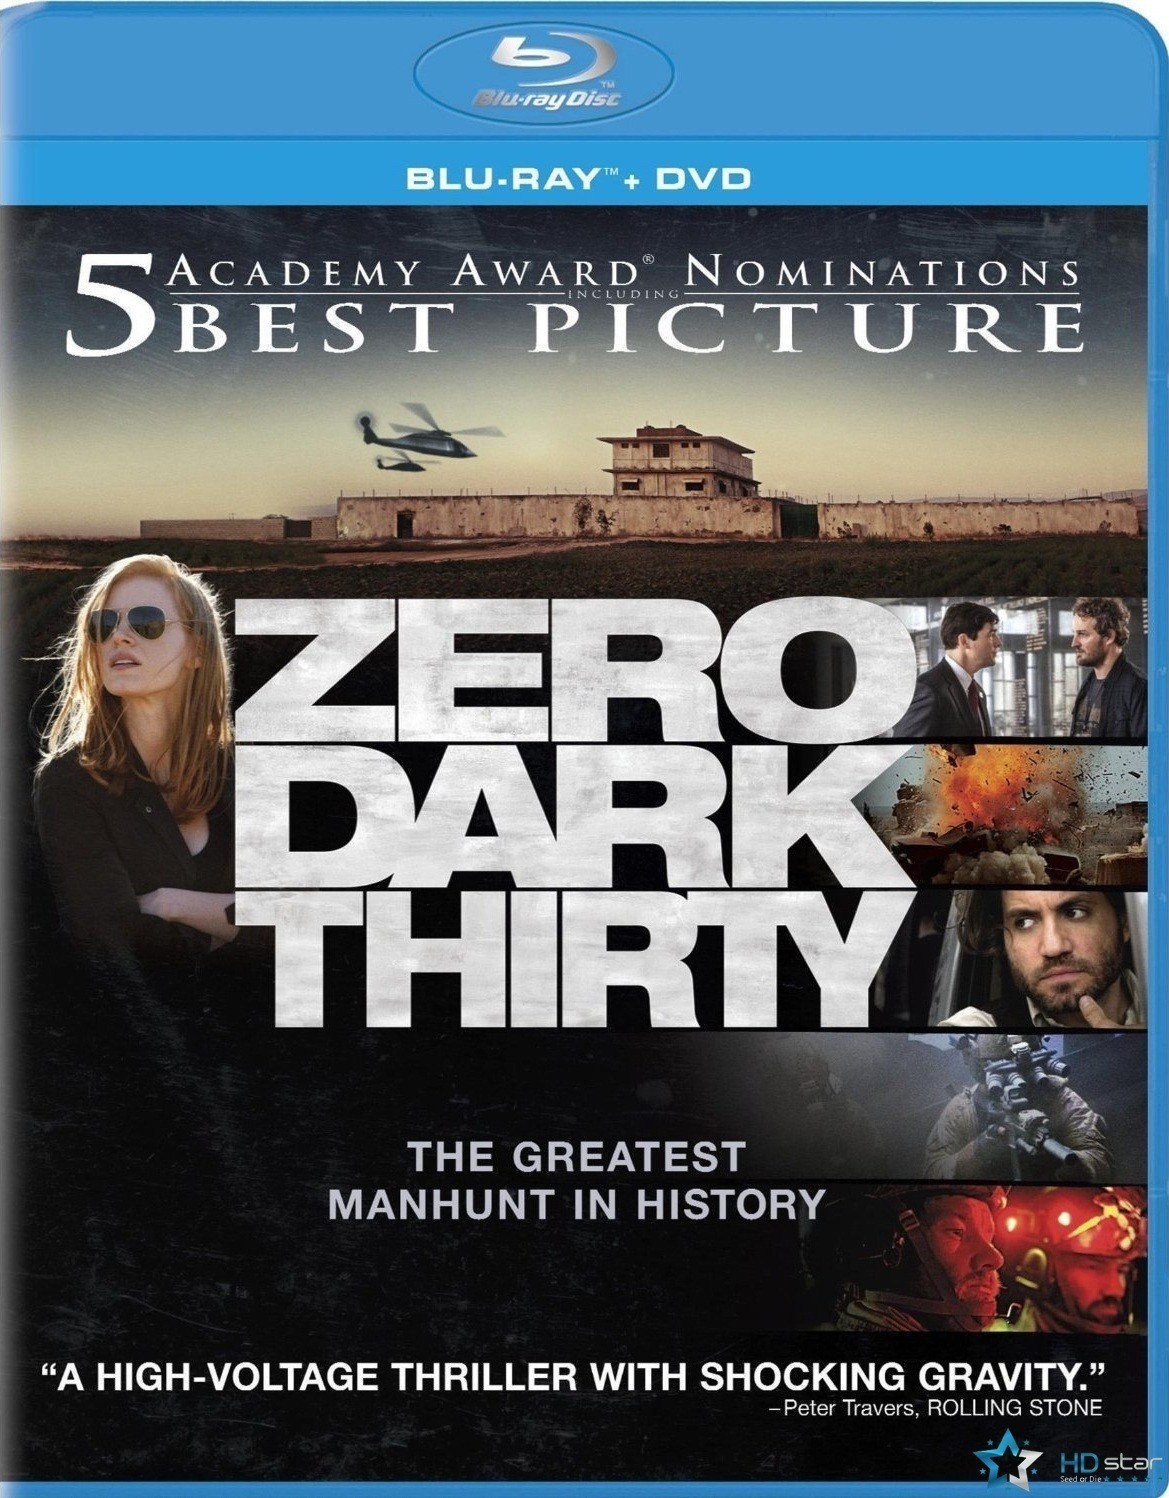  猎杀本拉登 Zero Dark Thirty (2012)港名：猎杀拉登 92-084 